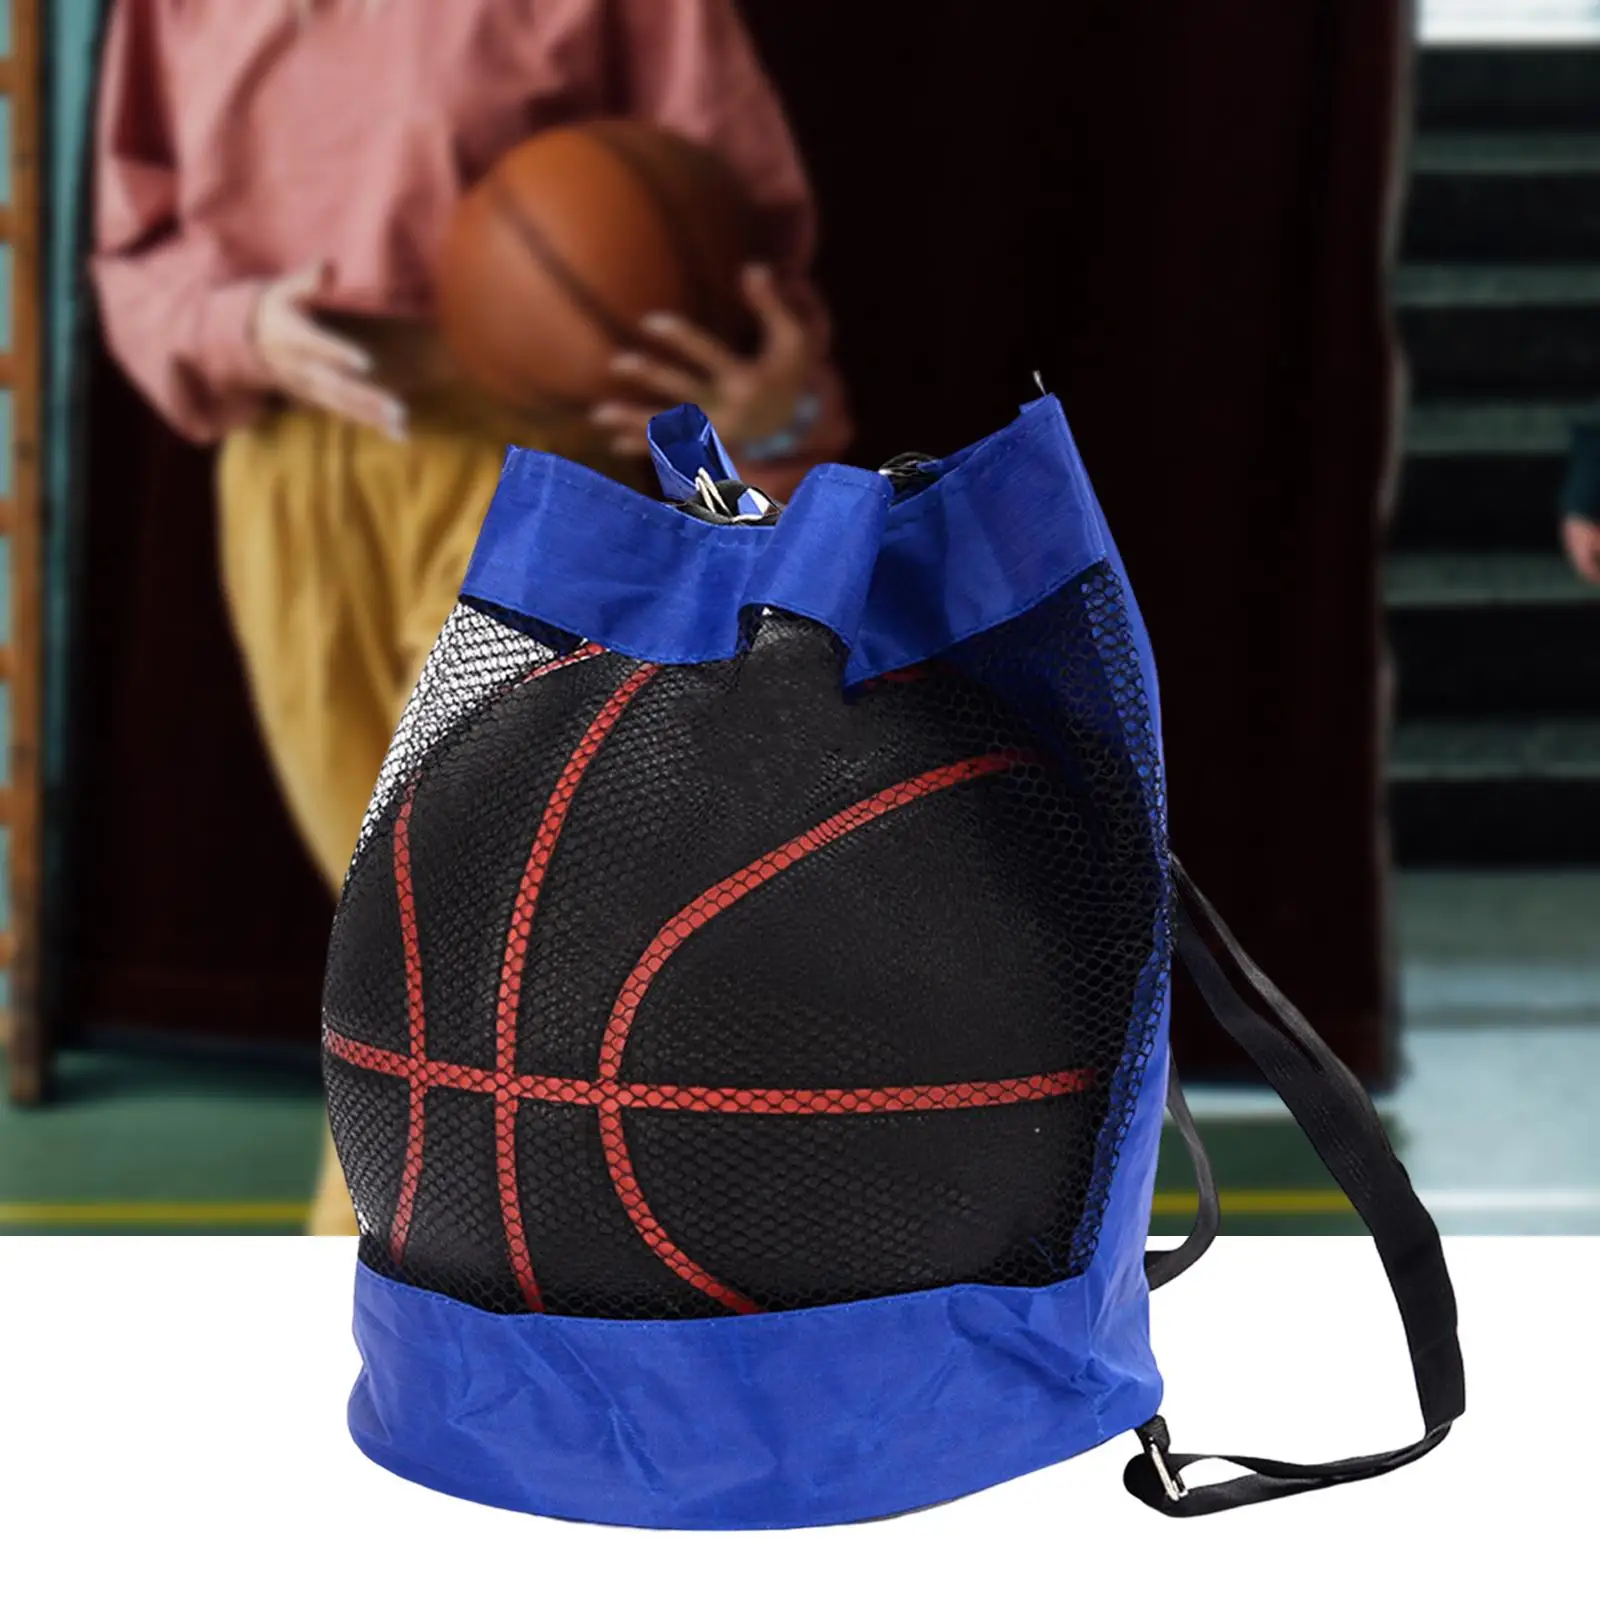 Basketball Backpack Sackpack Gym Bag Storage Bag Mesh Carry Bag for Football Rugby Ball Basketball Volleyball